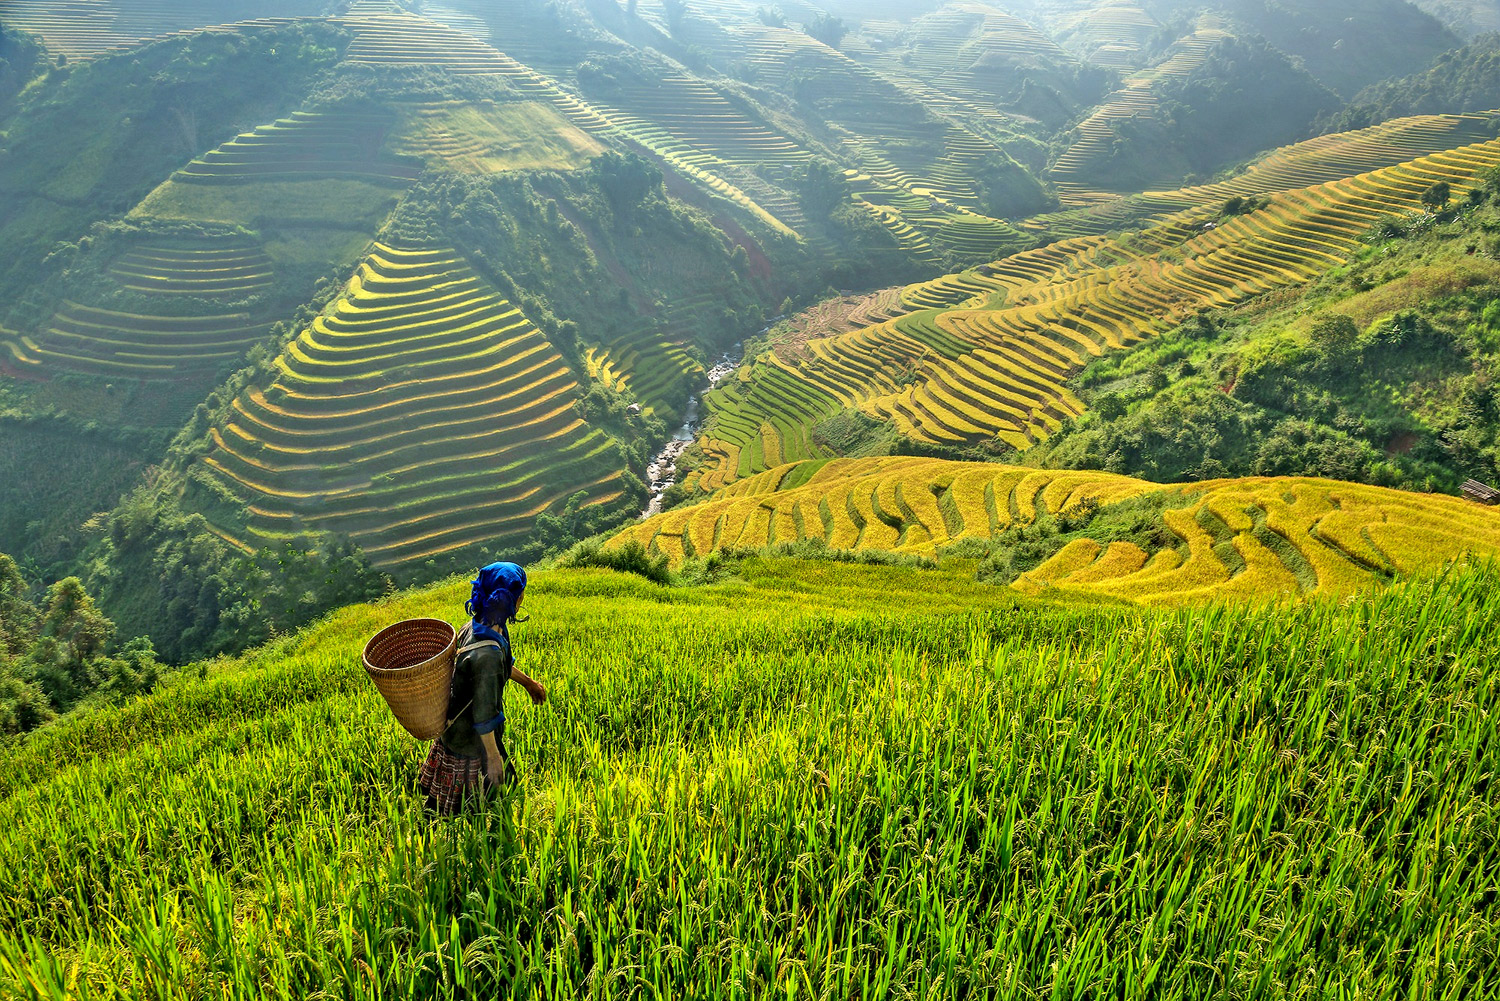 Nord del Vietnam, Lao Cai provincia, Sapa: coltivazioni di riso a terrazza